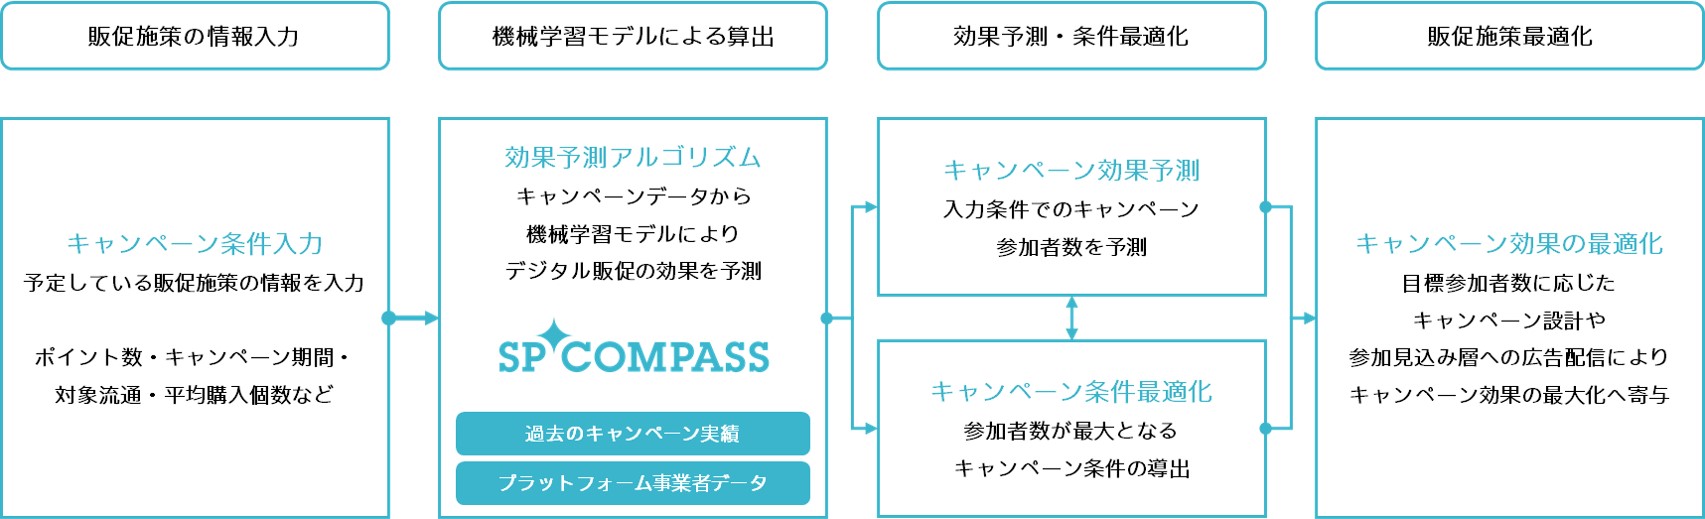 SP COMPASS.jpg